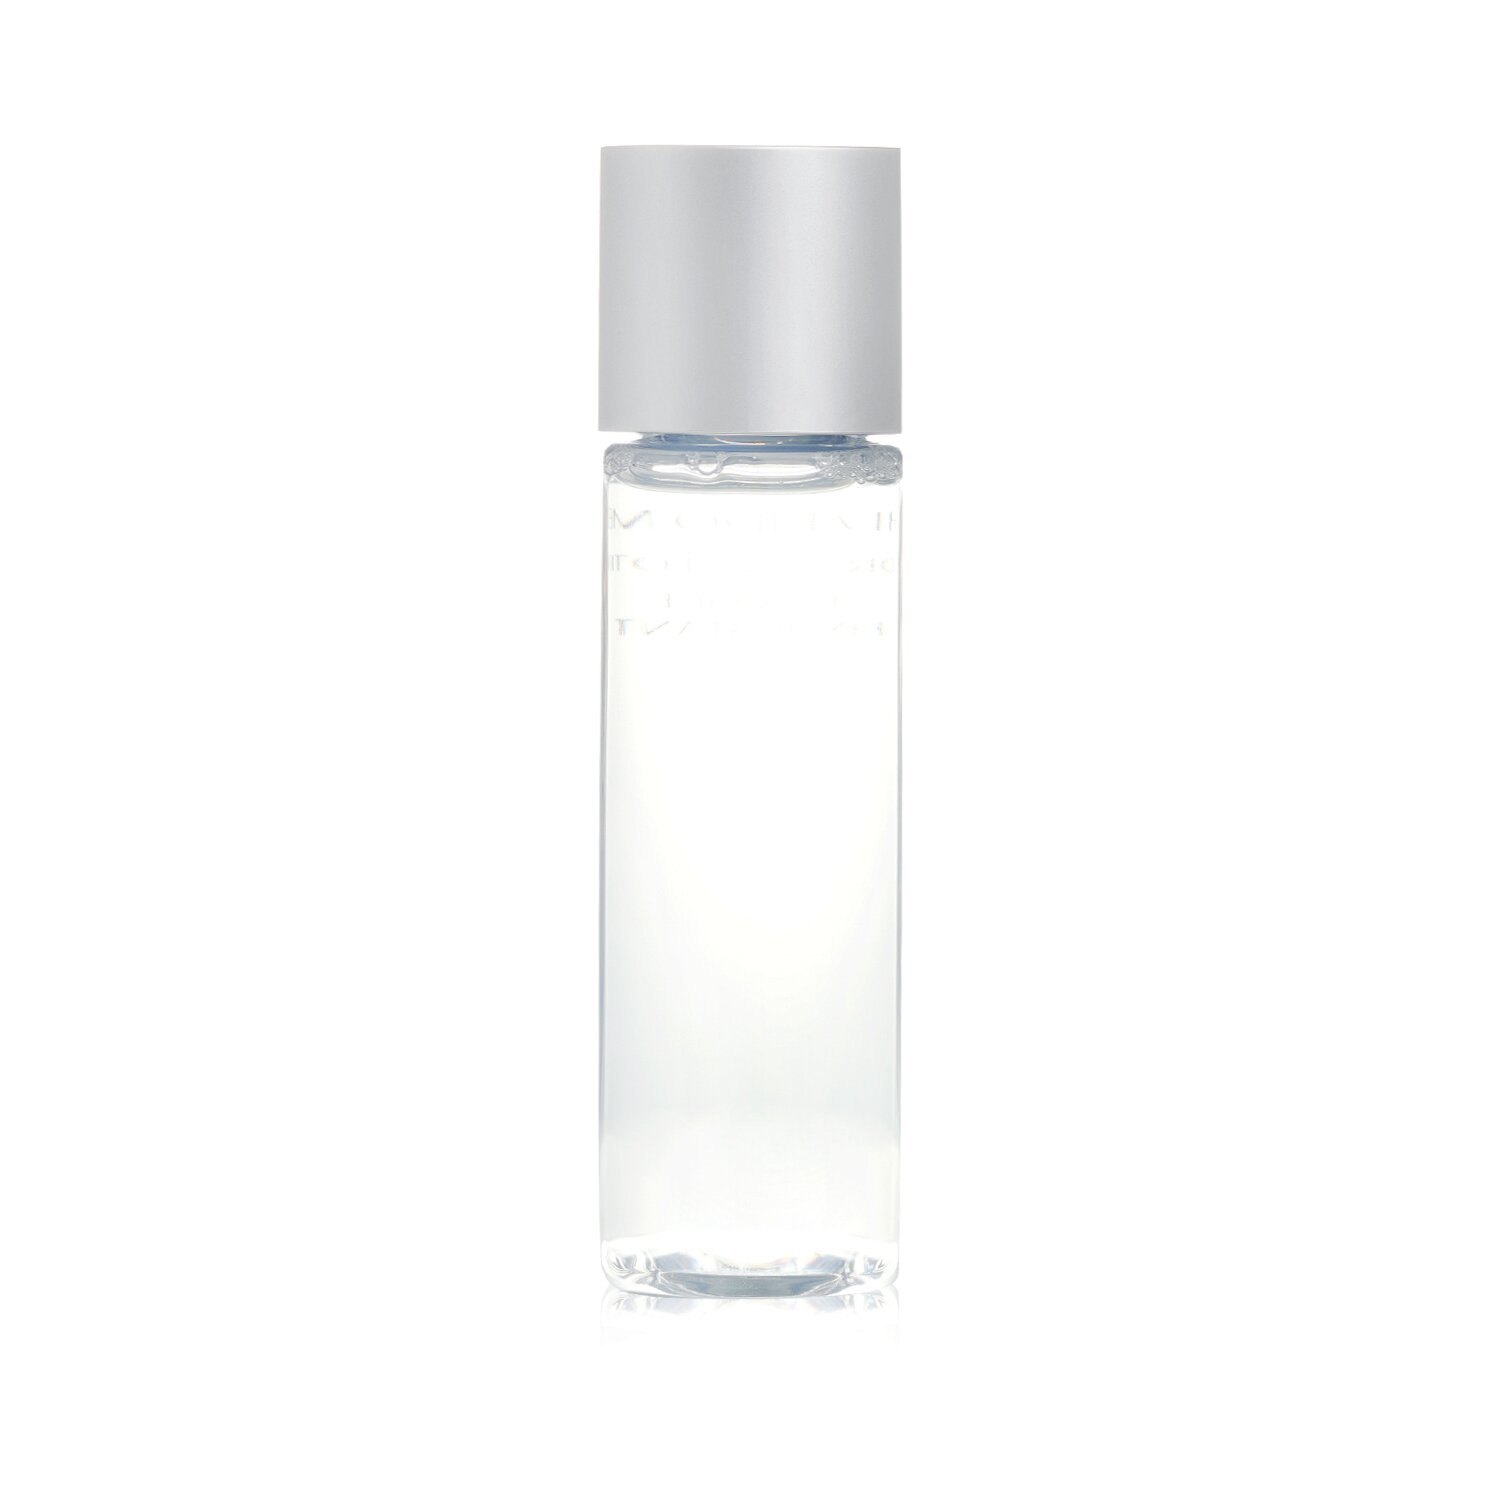 Shiseido Men hidratizirajući losion 150ml/5oz